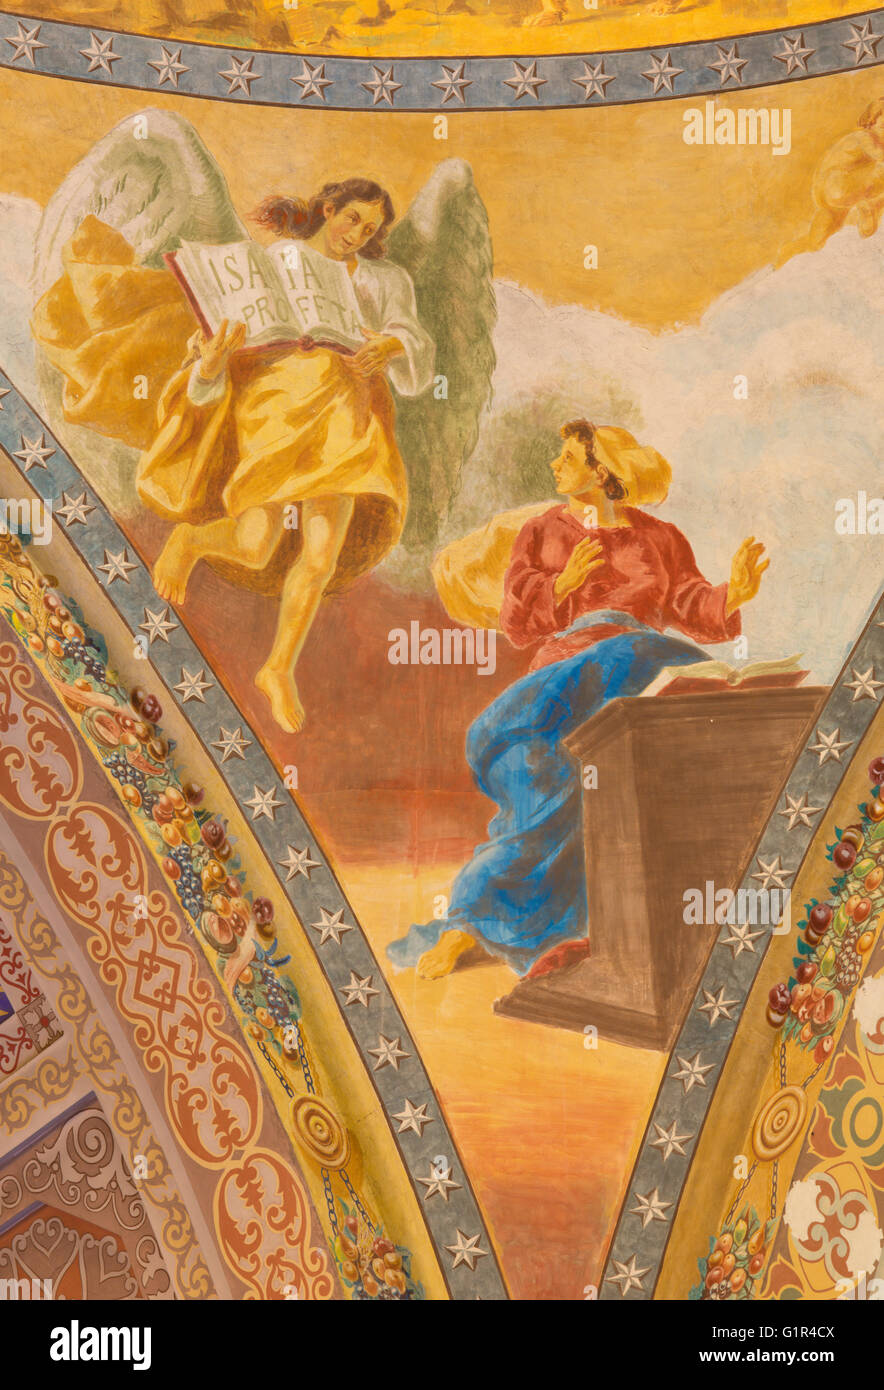 Roma, Italia, 2016: il dettaglio di affresco dell'Annunciazione (1957-1965) nella cupola della chiesa basilica di Santa Maria Ausiliatrice Foto Stock